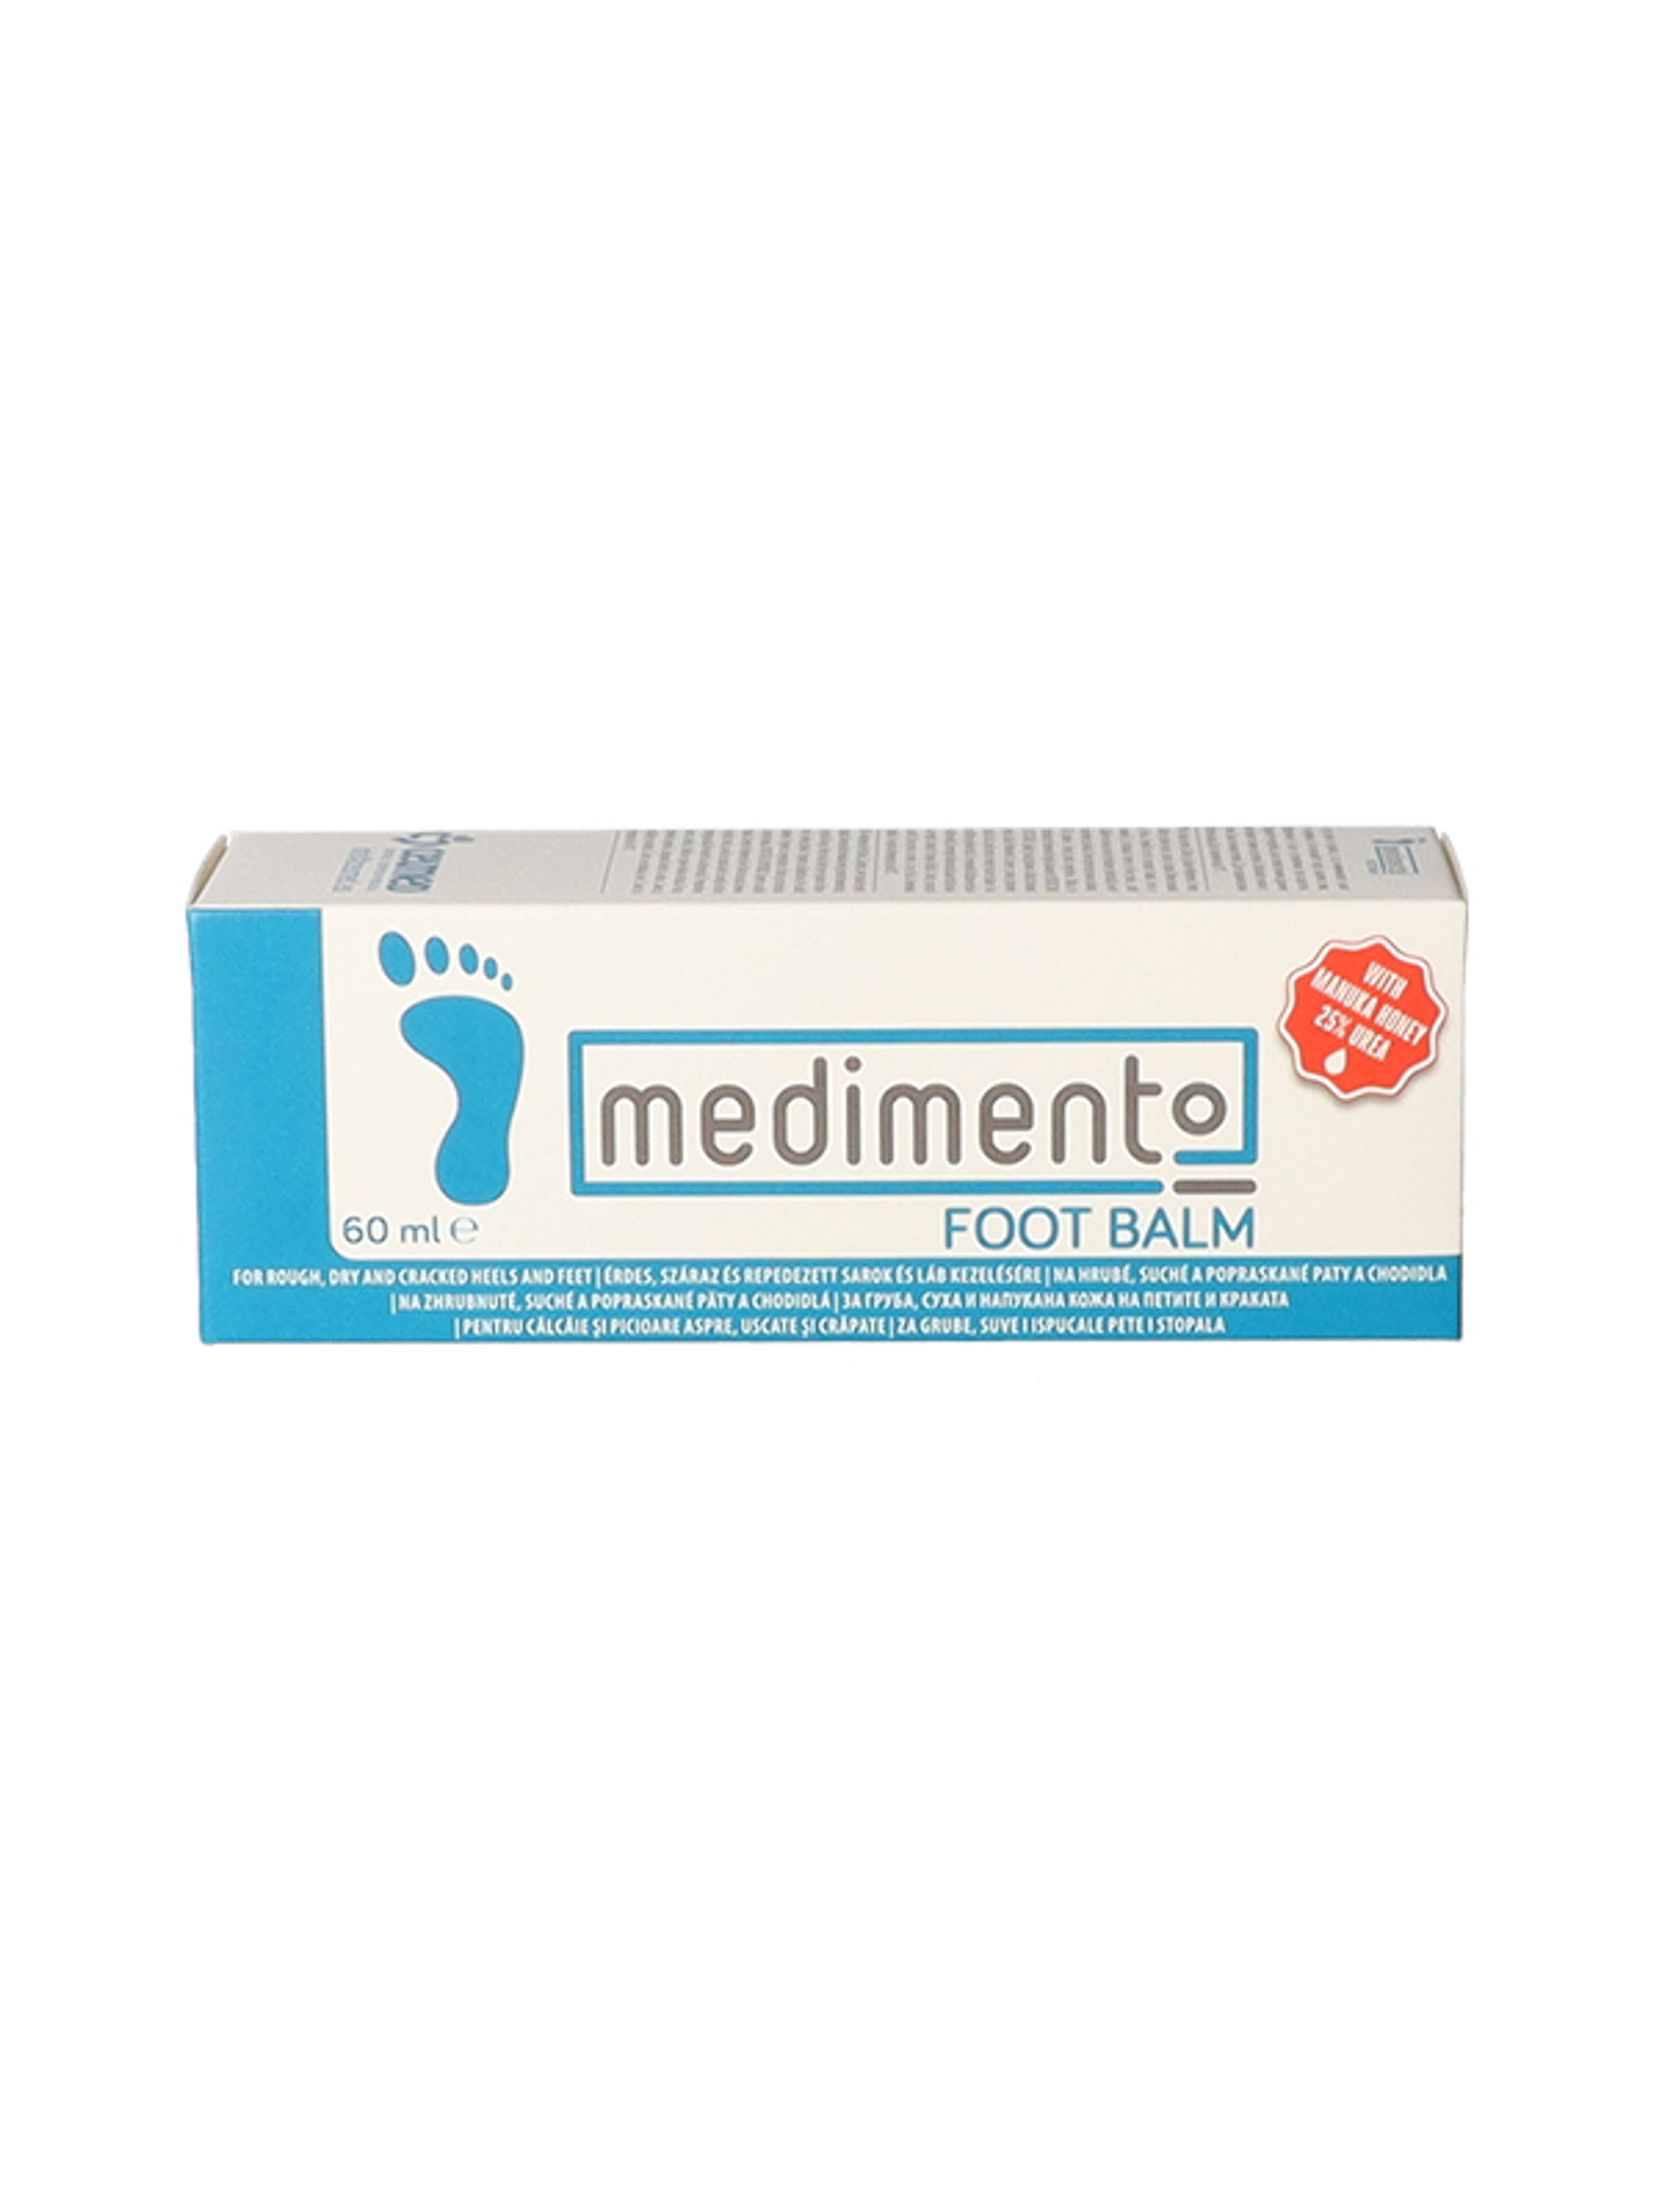 Medimento sarok és lábápoló krém - 60 ml-1